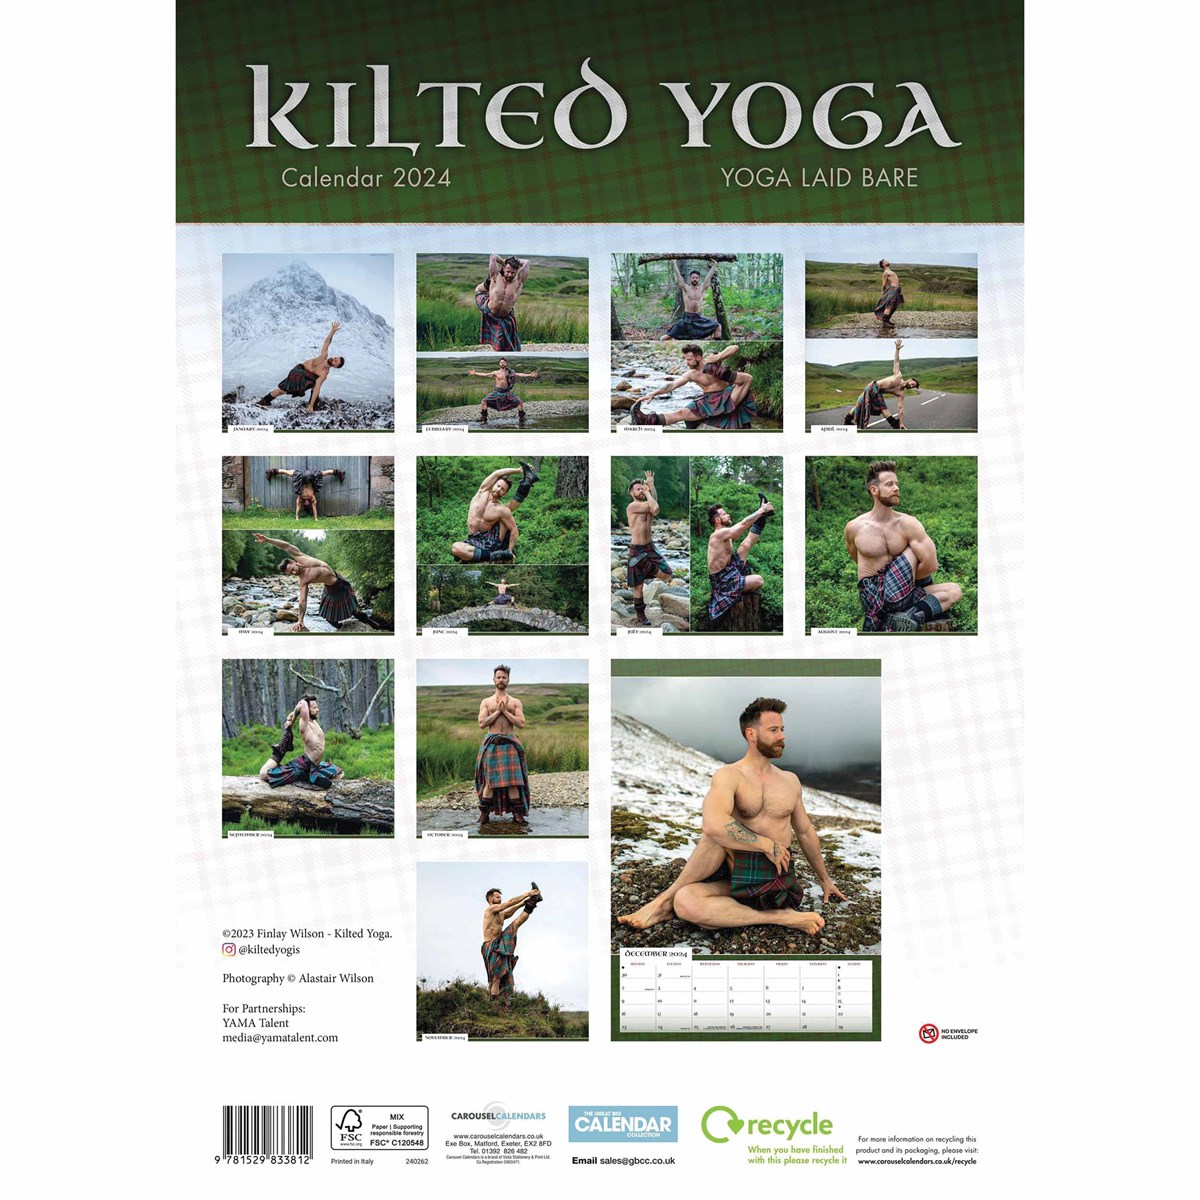 Kilted Yoga A3 Calendar 2024 by Carousel Calendars 240262